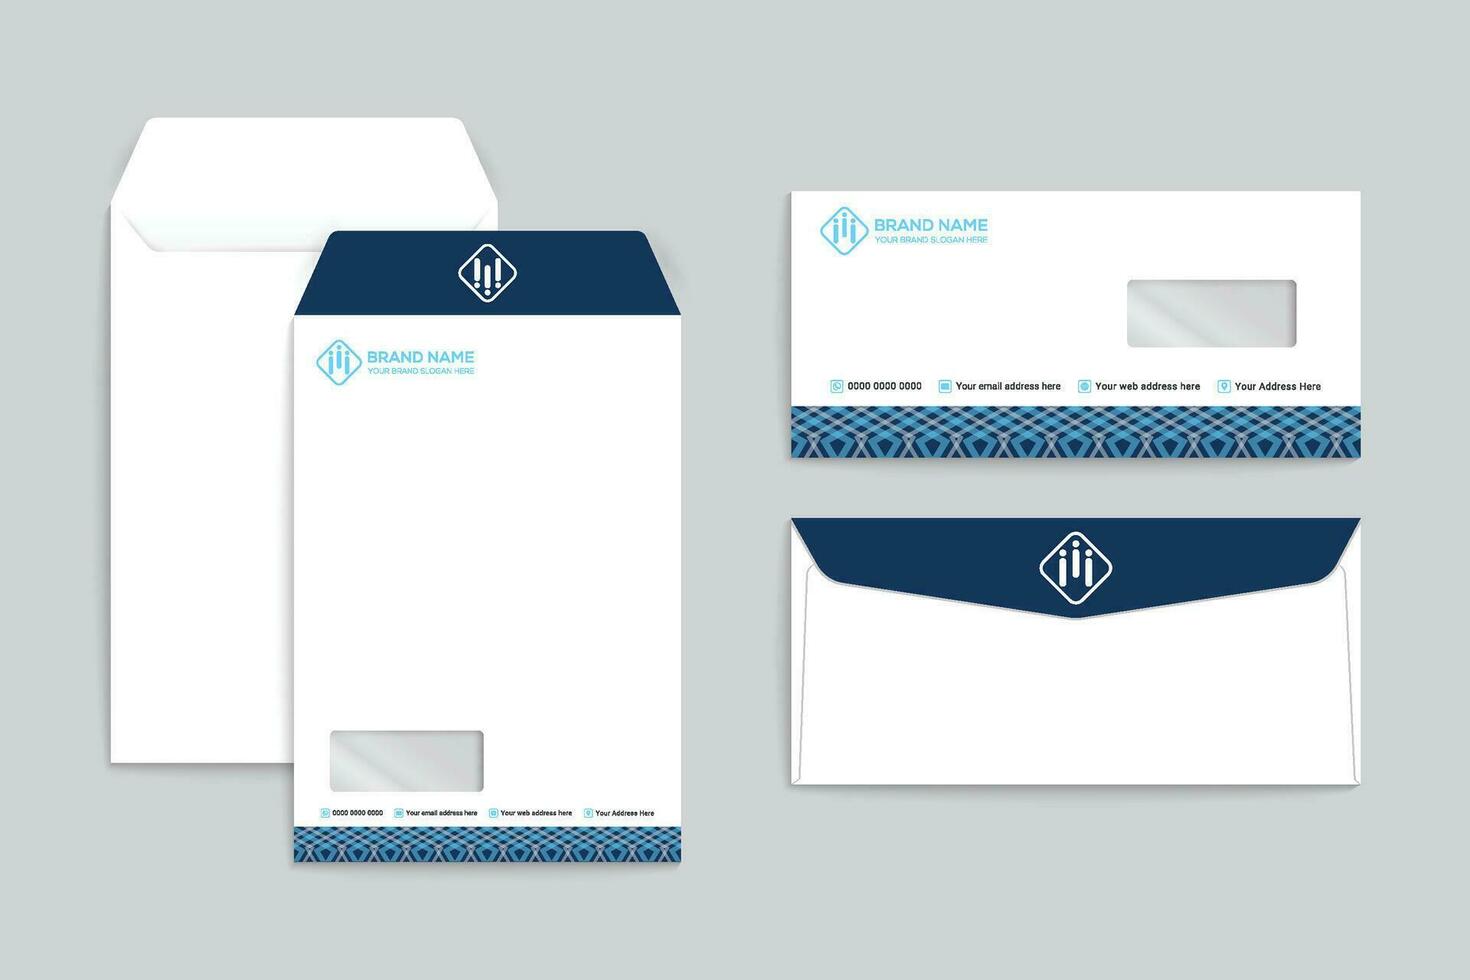 Briefumschlag Design mit Blau Farbe vektor